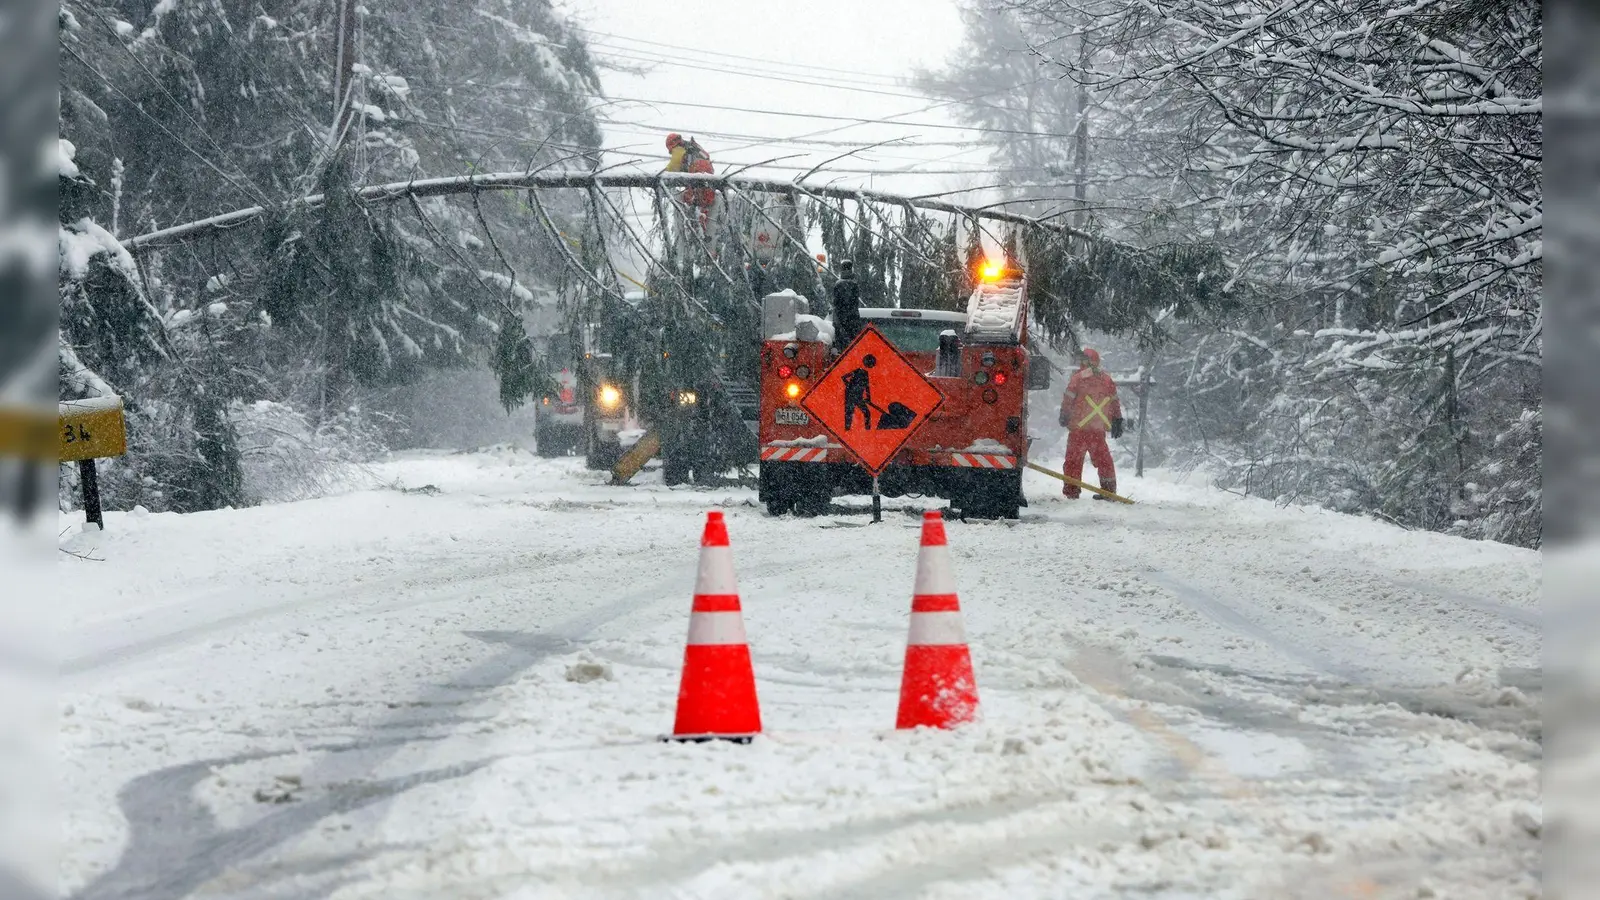 Ein Teil der Route 9 zwischen Falmouth und Cumberland in Maine ist nach heftigem Schneefall gesperrt. (Foto: Ben McCanna/Portland Press Herald via AP/dpa)